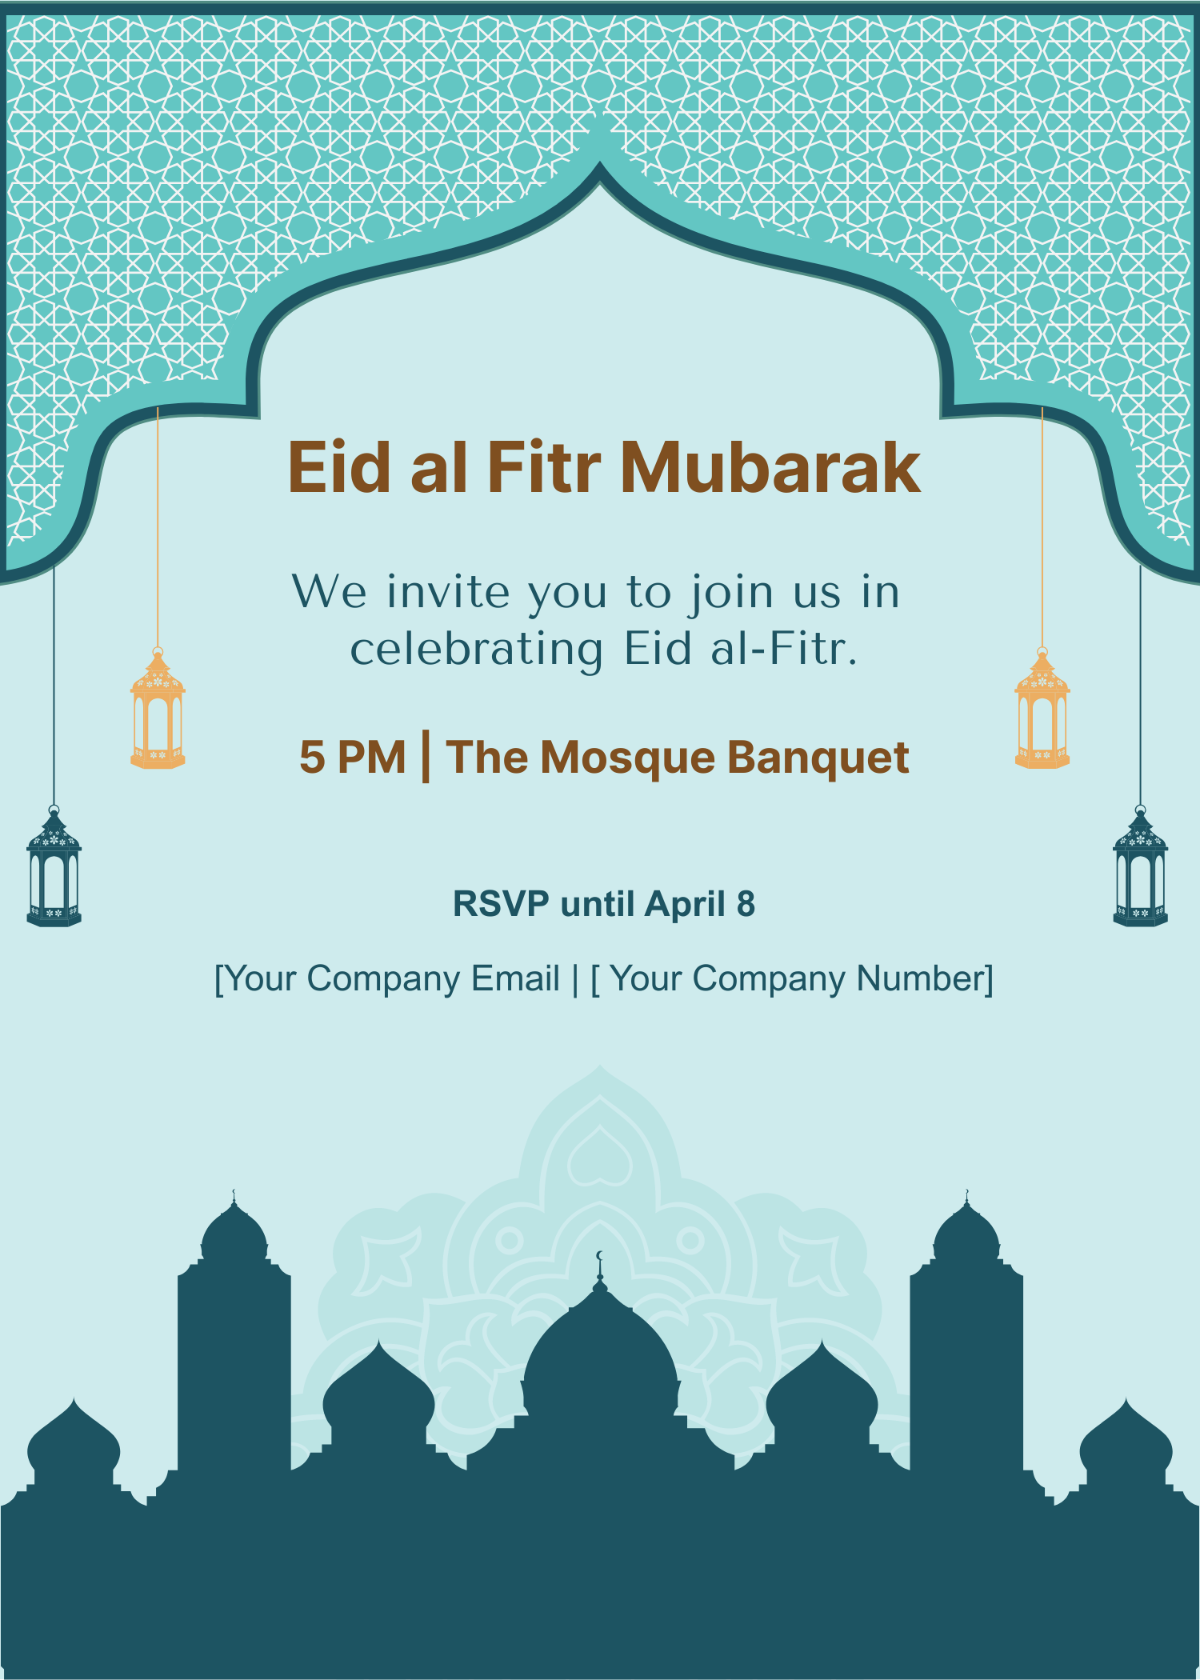 Eid al Fitr Mubarak Invitation